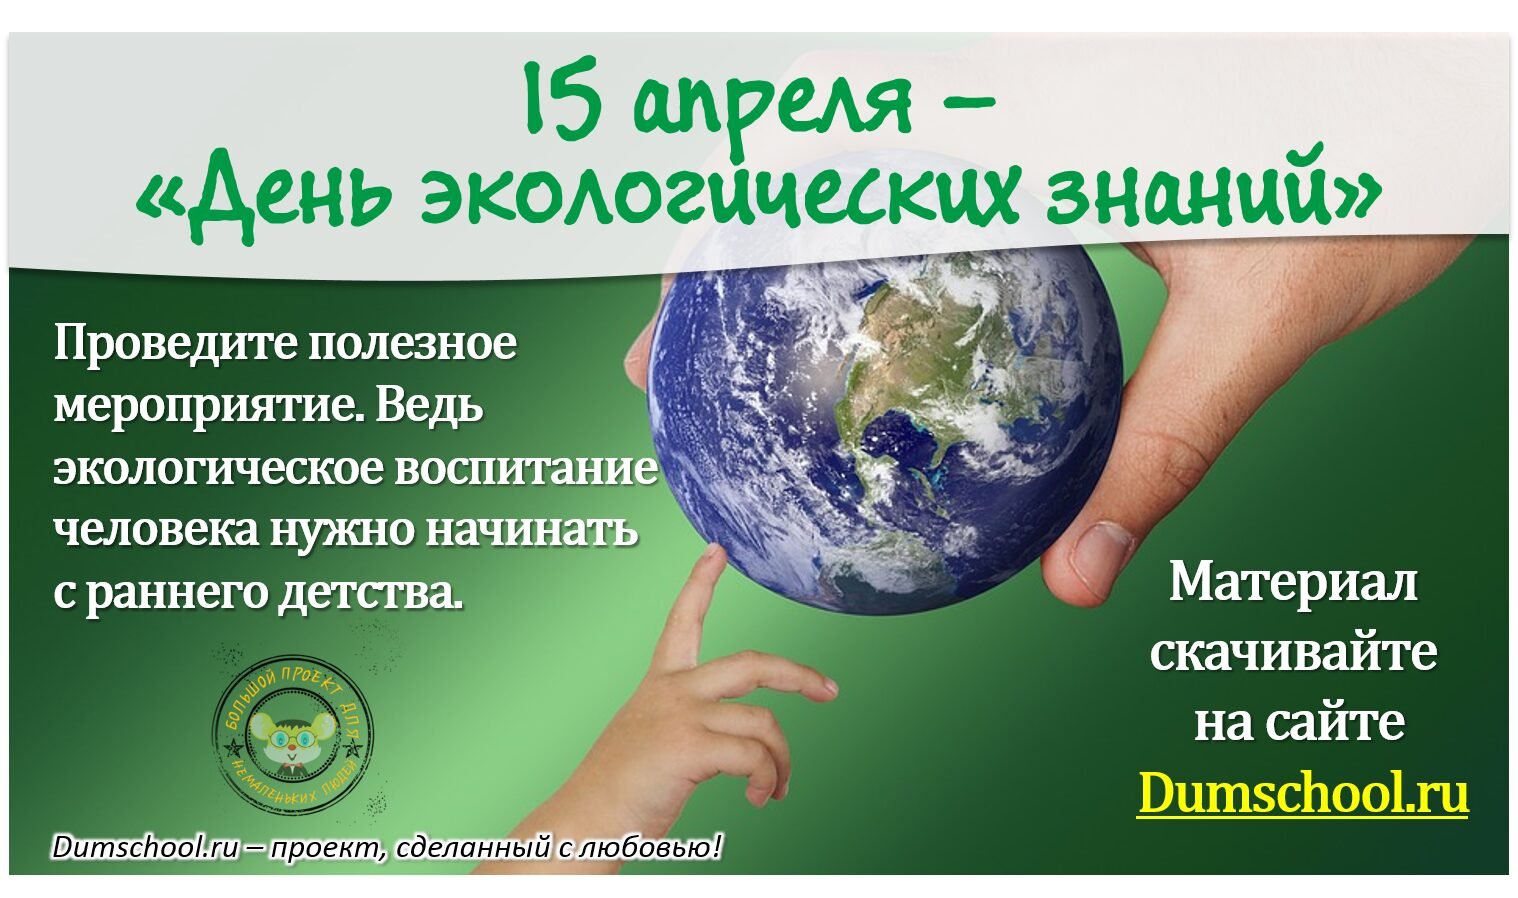 15 Апреля день экологических знаний. Всемирный день экологических знаний. День экологической грамотности. Открытка день экологических знаний. Экологические дни в году